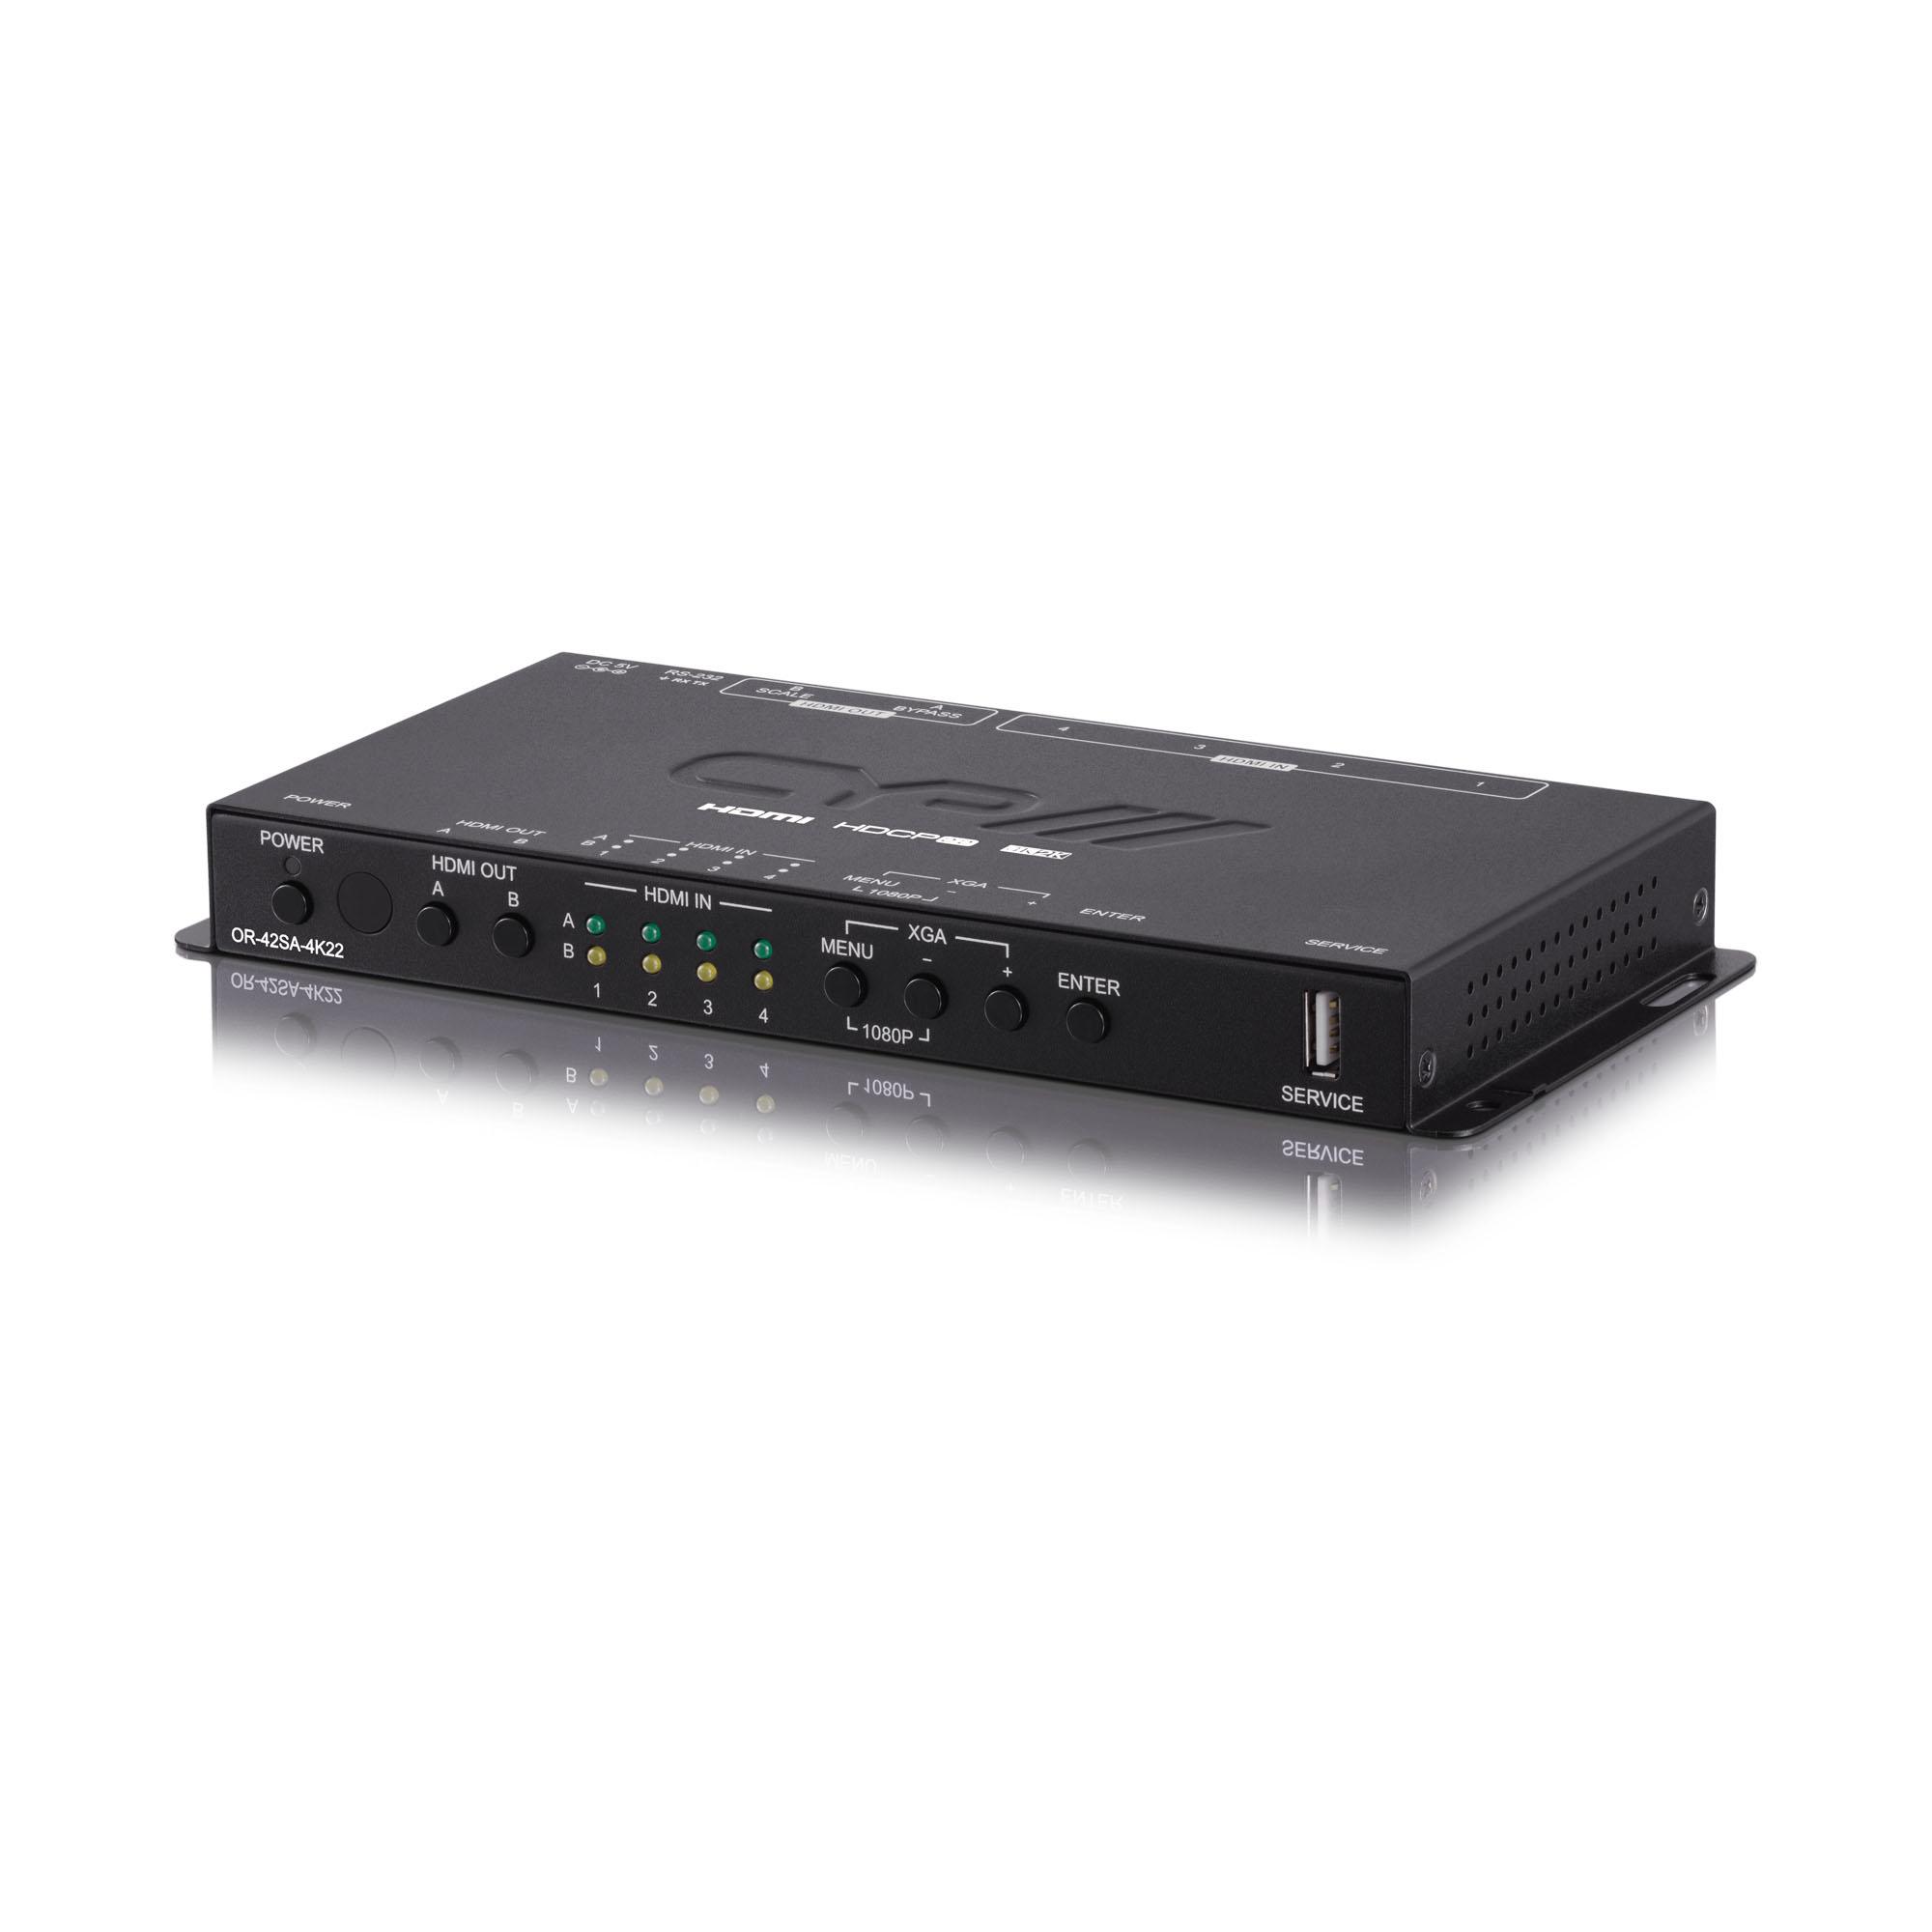 OR-42SA-4K22 4x2 4K UHD+ HDMI V2.0/HDCP2.2 Matrix Scaler Box